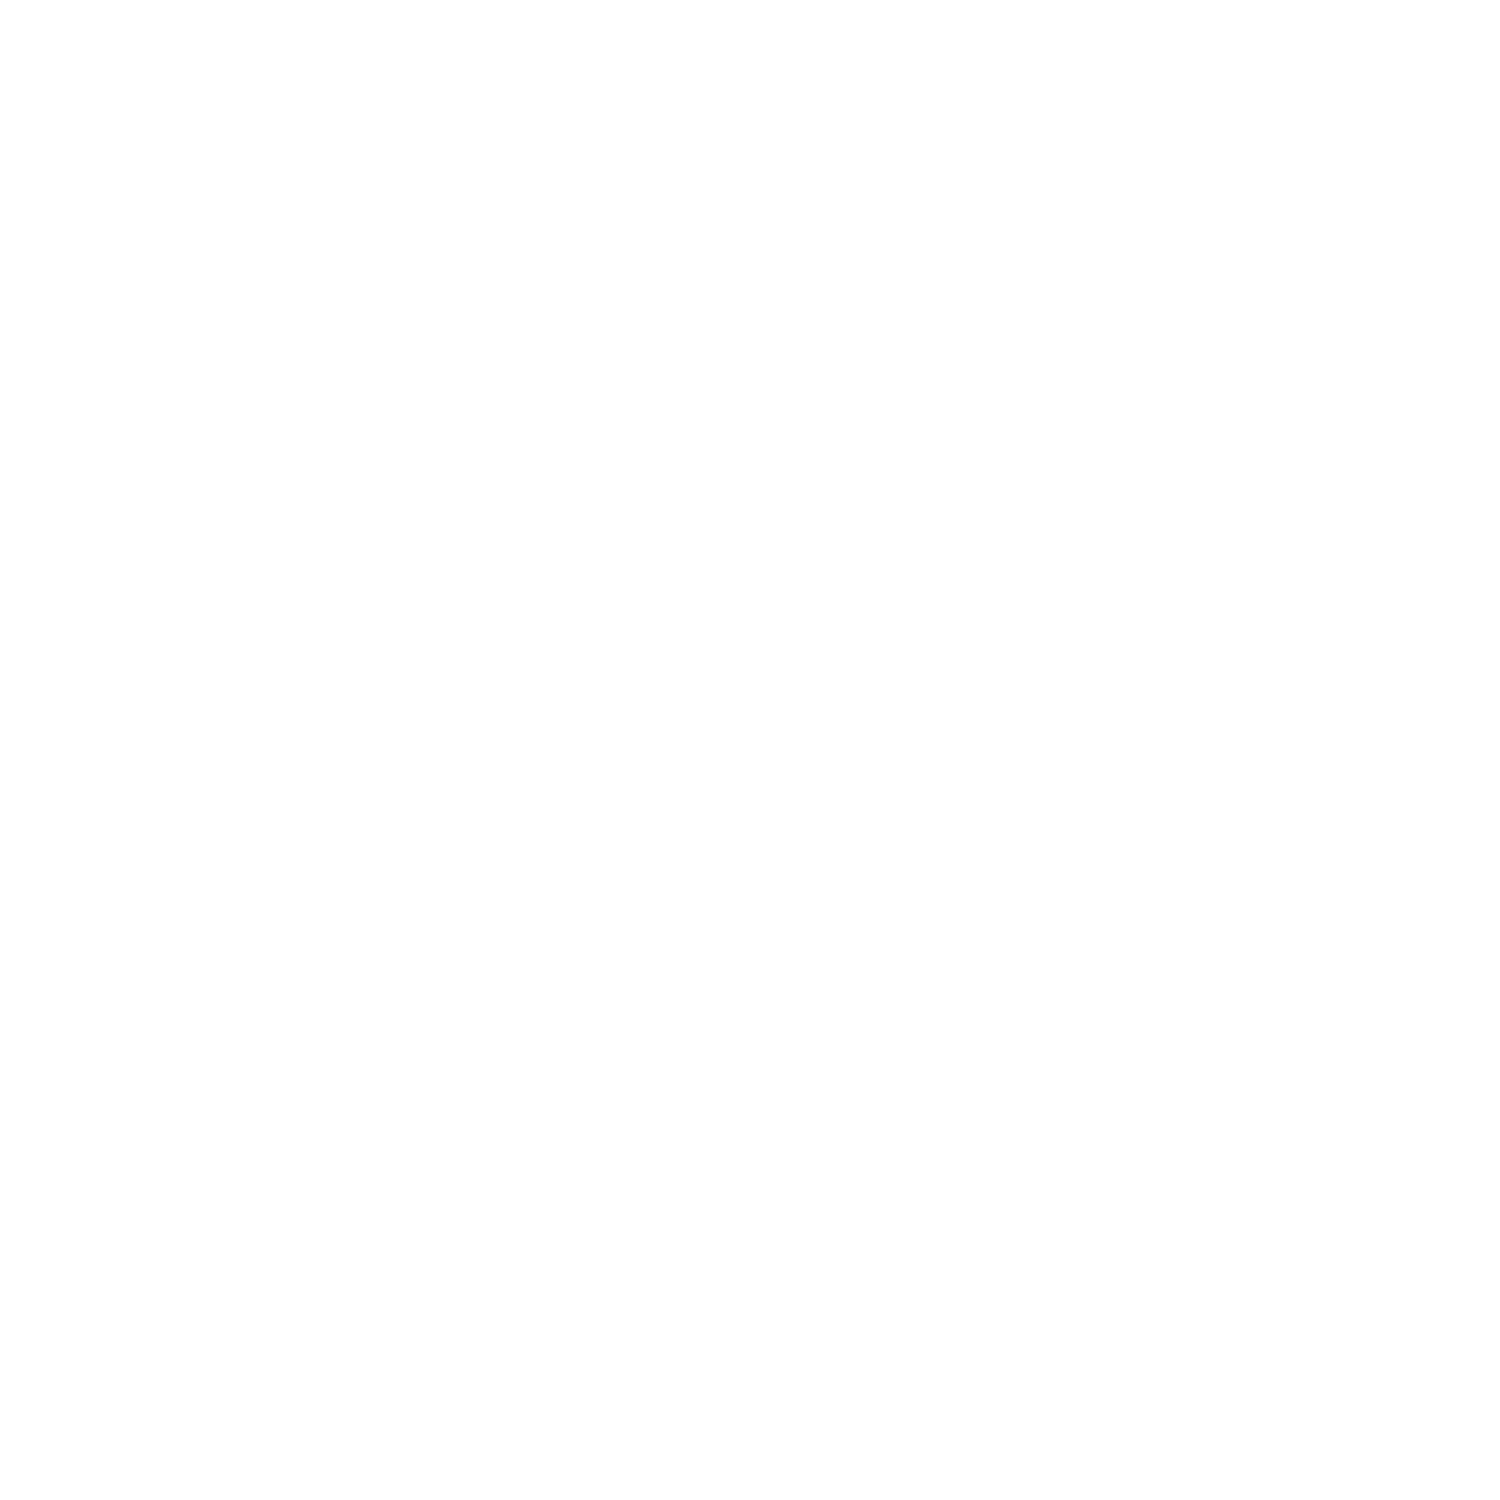 Cooks Run Cedar